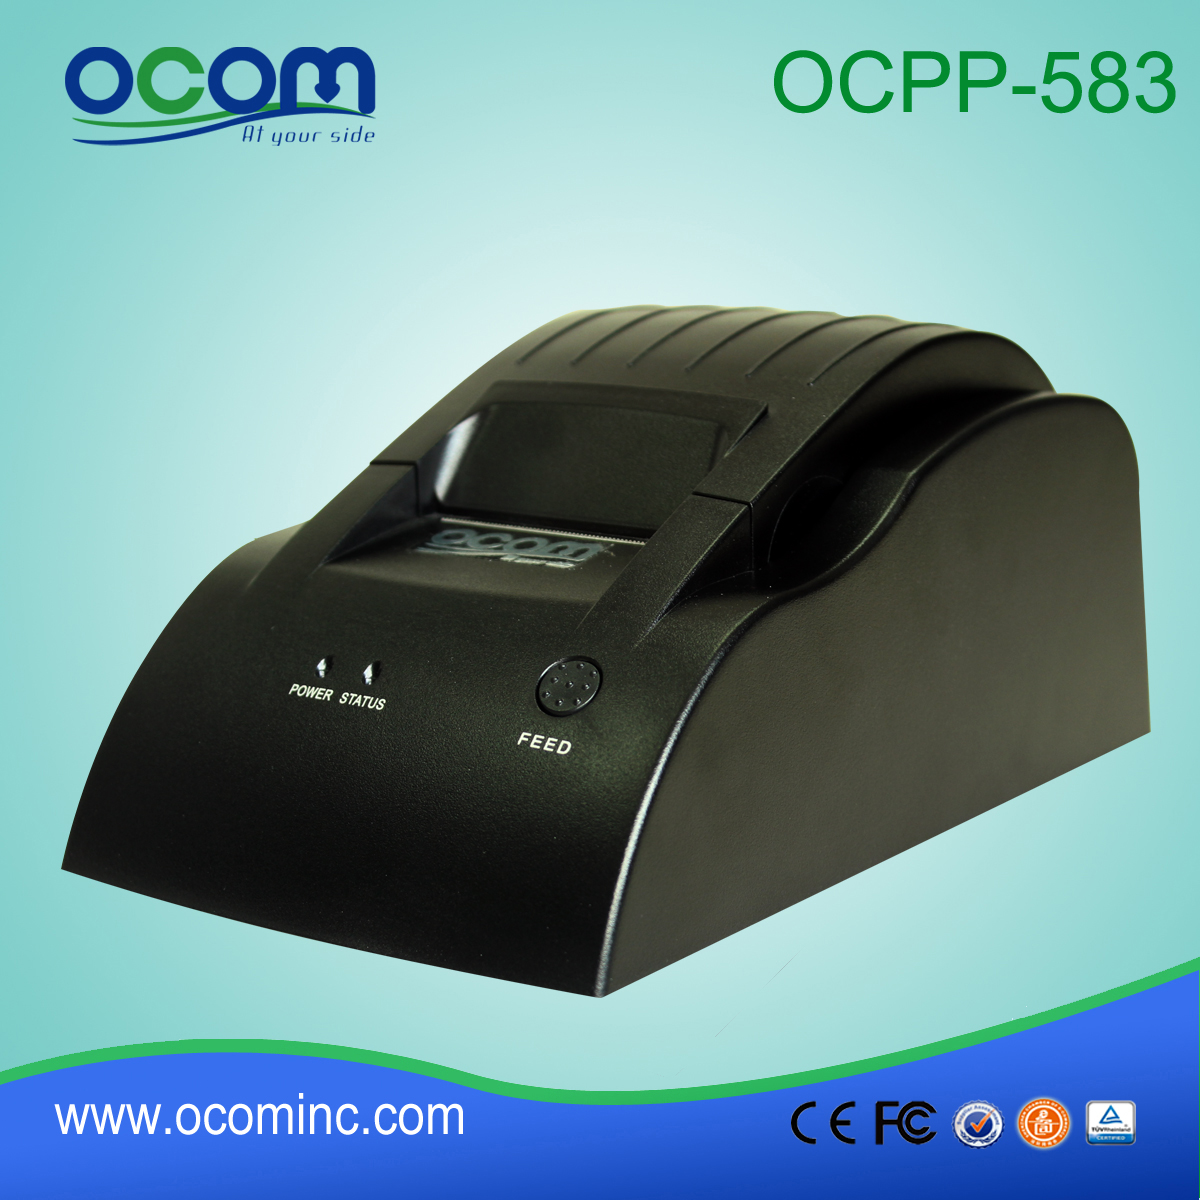 Низкая стоимость 58 POS-принтера законопроект OCPP-583